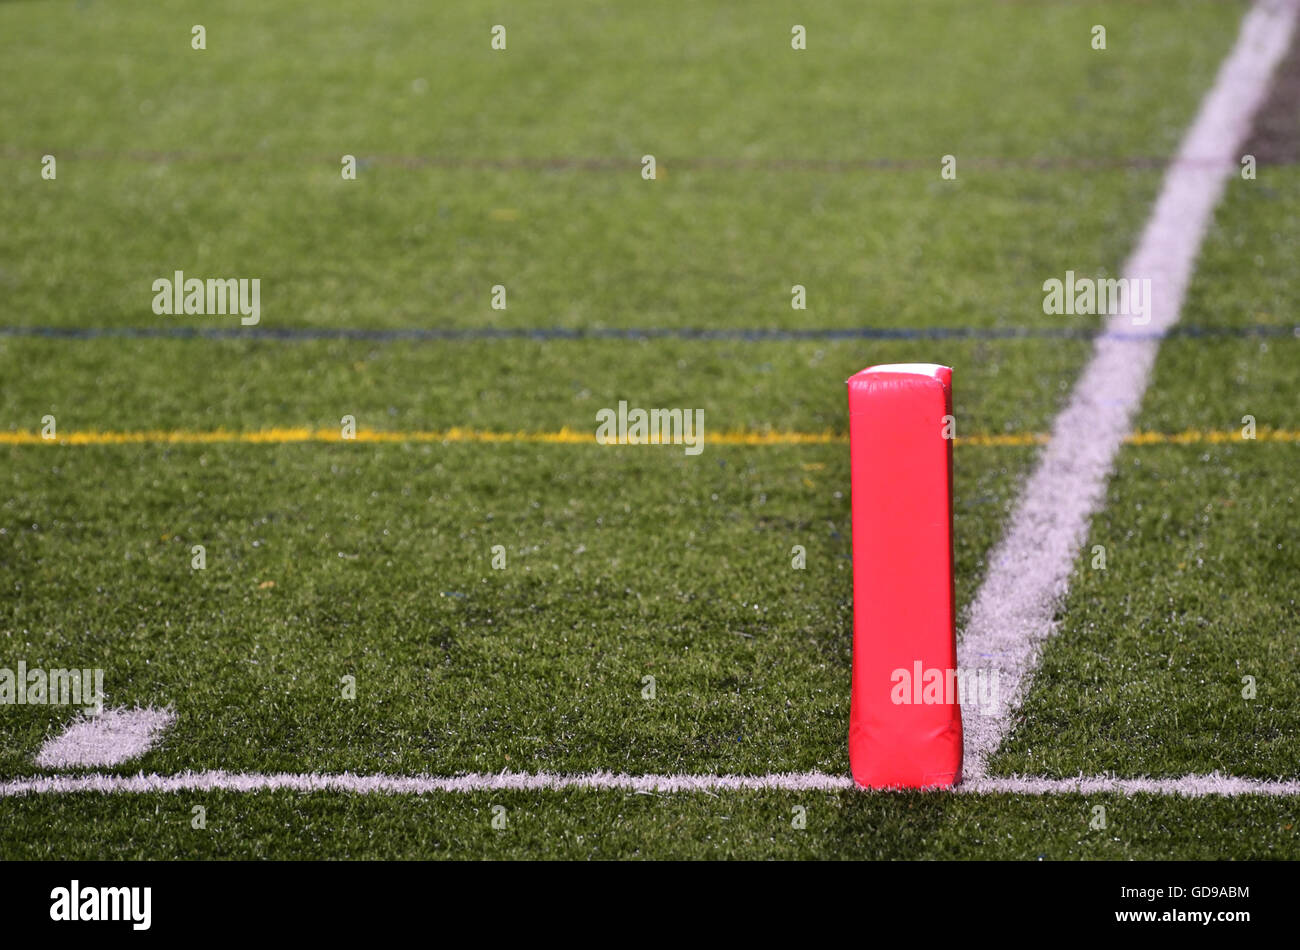 Pilón en línea de gol de campo de fútbol americano Foto de stock